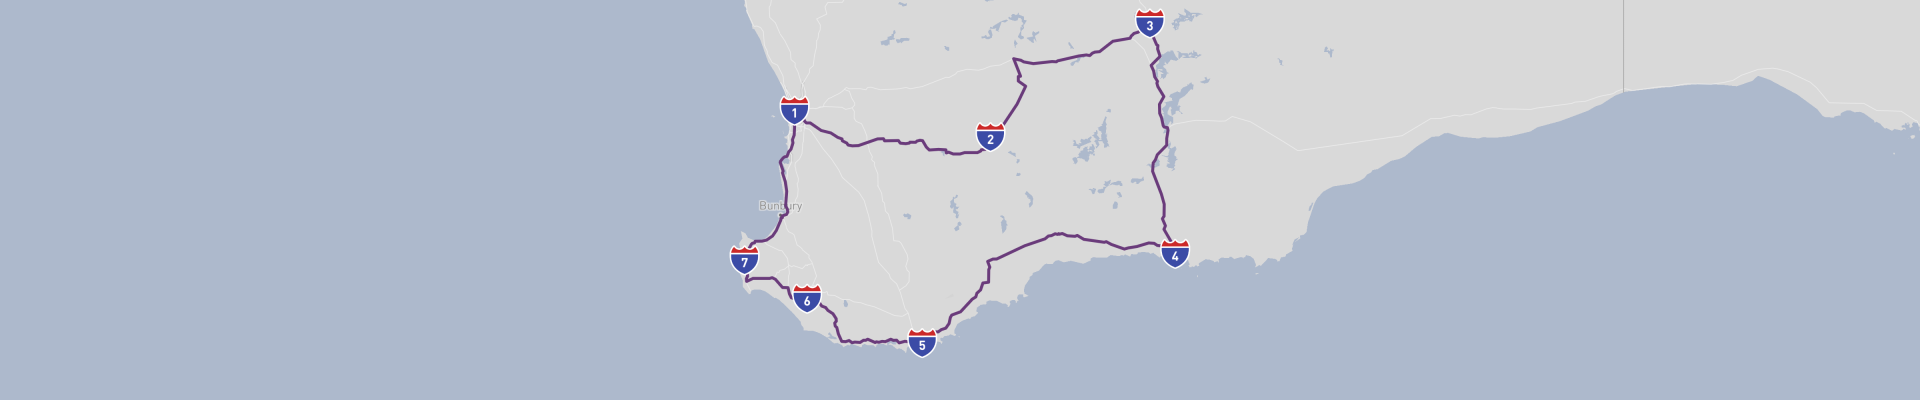 Viaje por carretera al suroeste de Australia